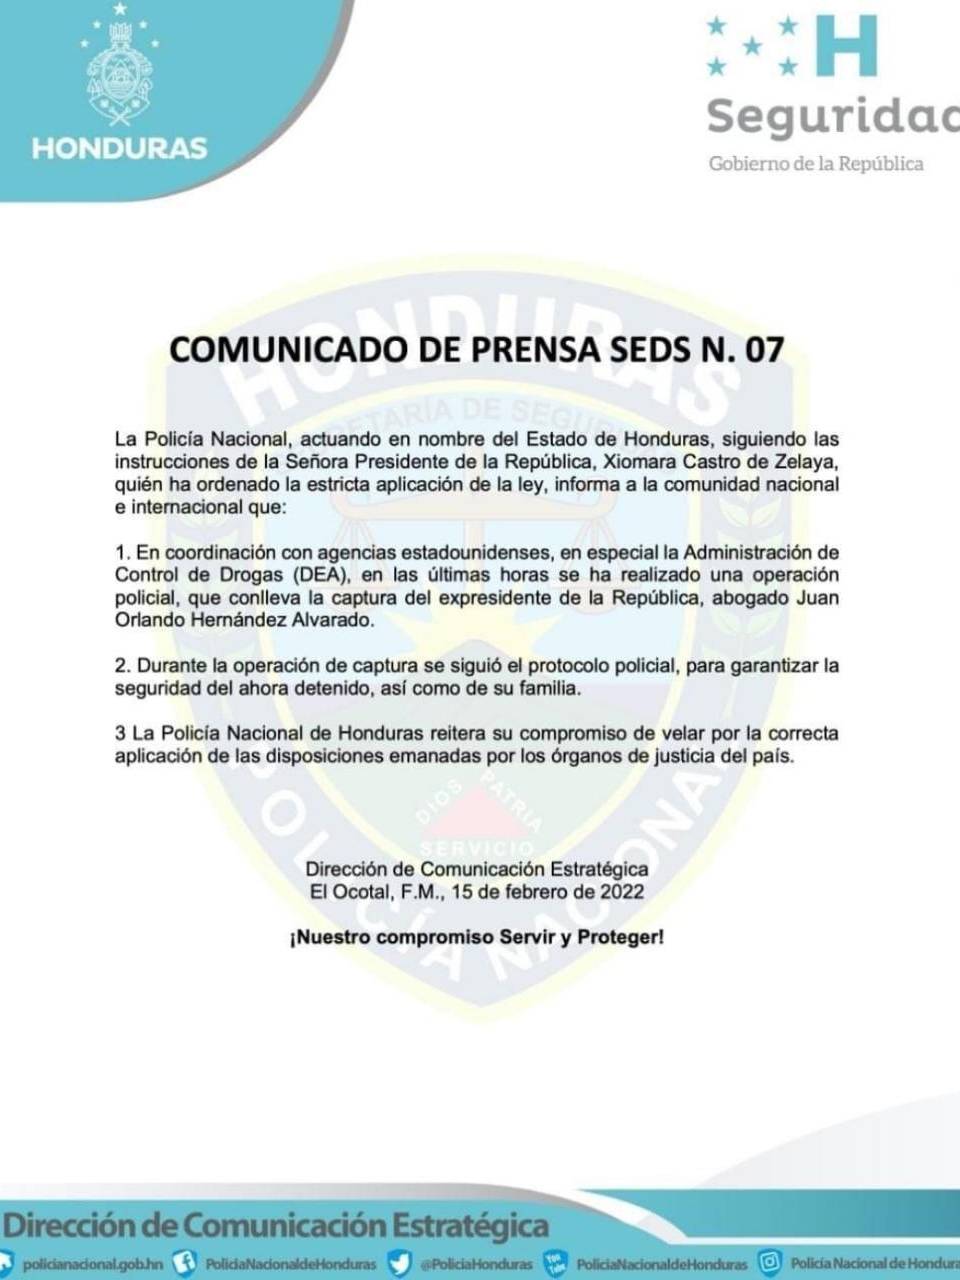 Policía Nacional trabajó con la DEA para capturar al expresidente Hernández